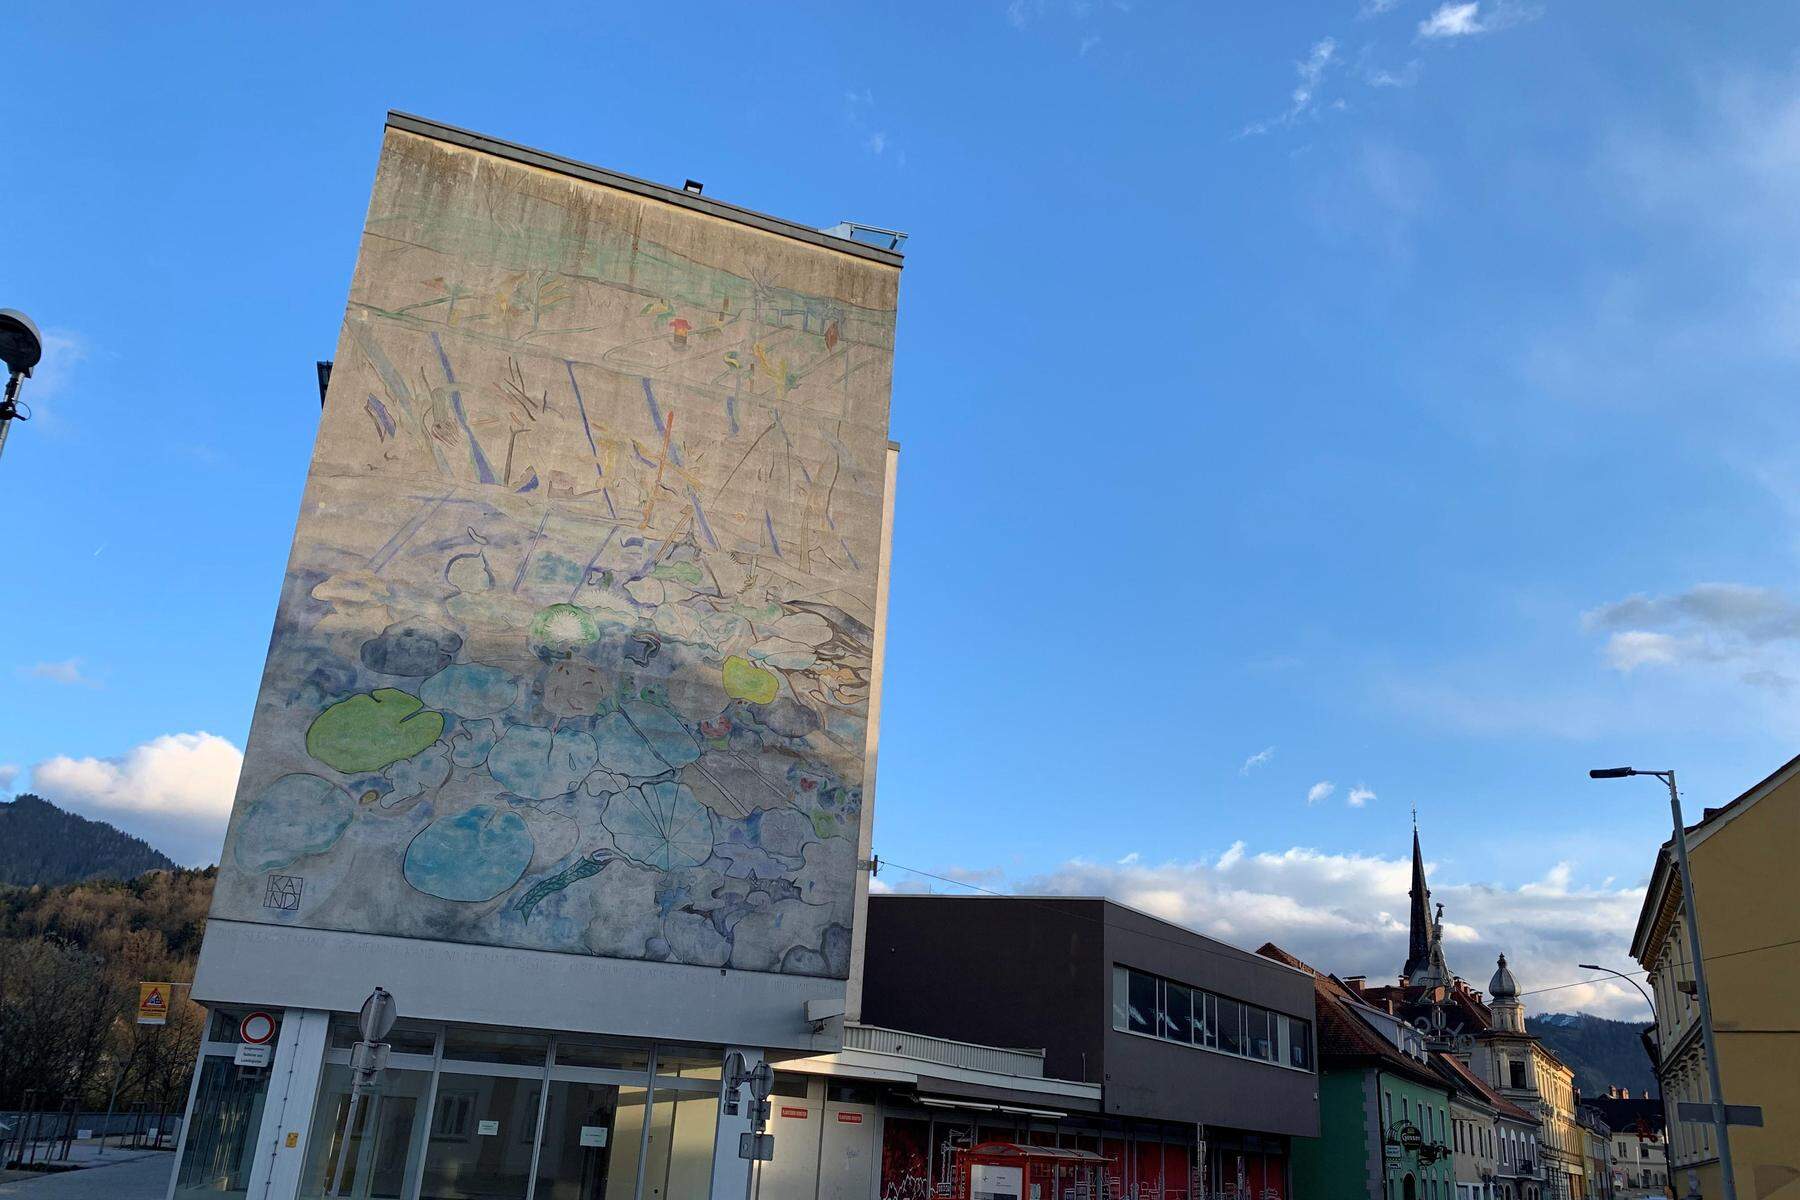 Künstler vor Gericht verurteilt: Stadt Leoben überlegt das Werk von Helmut Kand zu übermalen